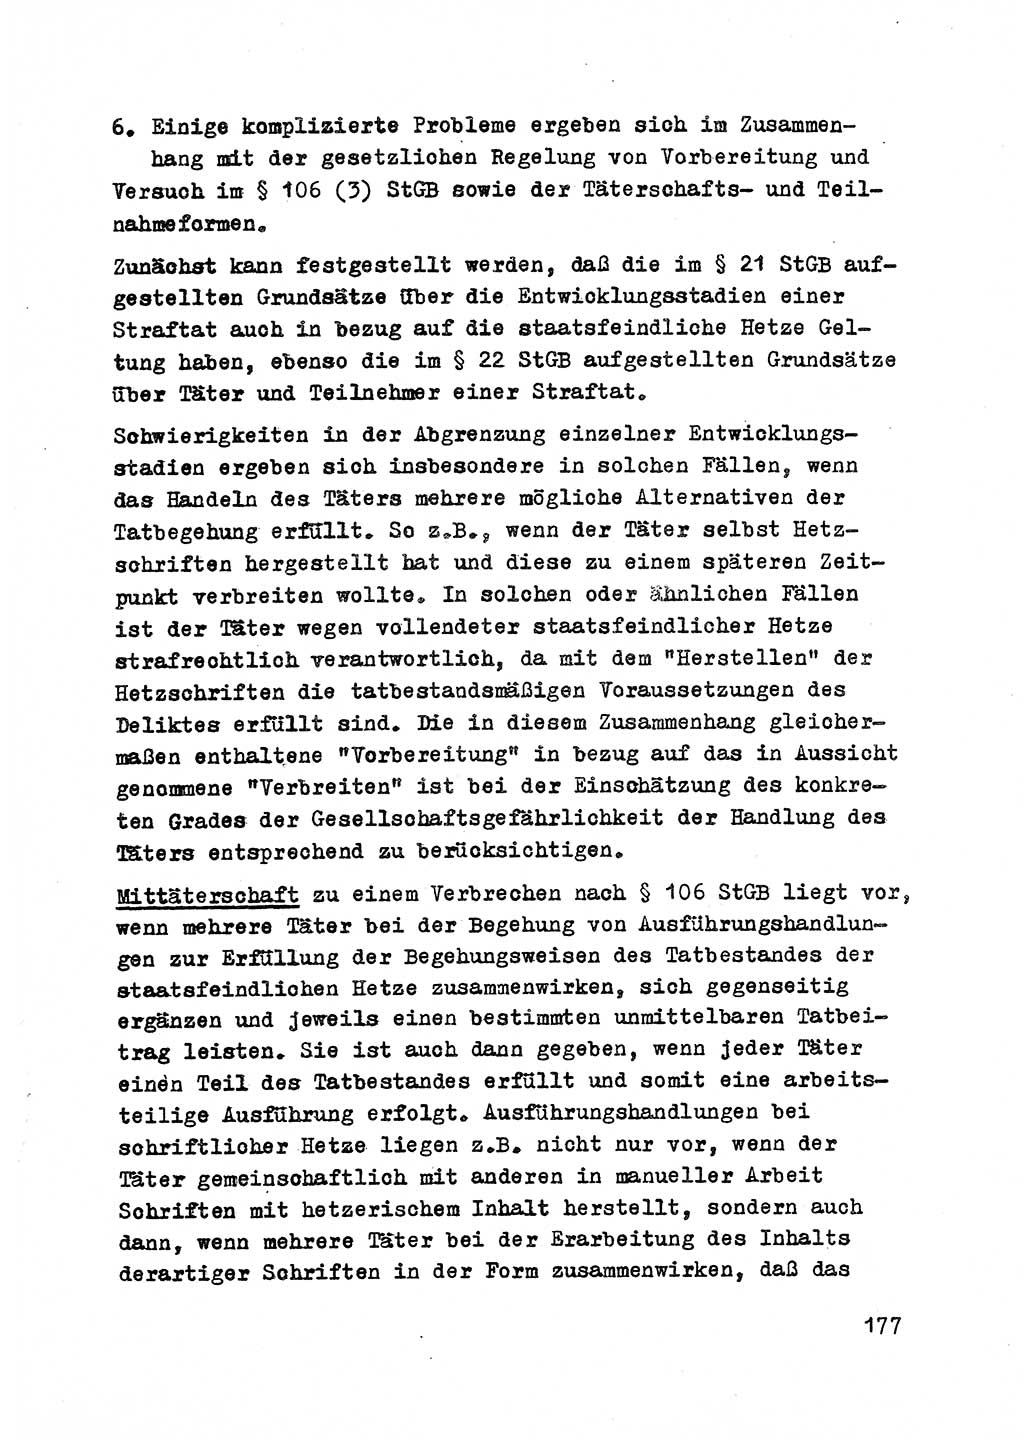 Strafrecht der DDR (Deutsche Demokratische Republik), Besonderer Teil, Lehrmaterial, Heft 2 1969, Seite 177 (Strafr. DDR BT Lehrmat. H. 2 1969, S. 177)